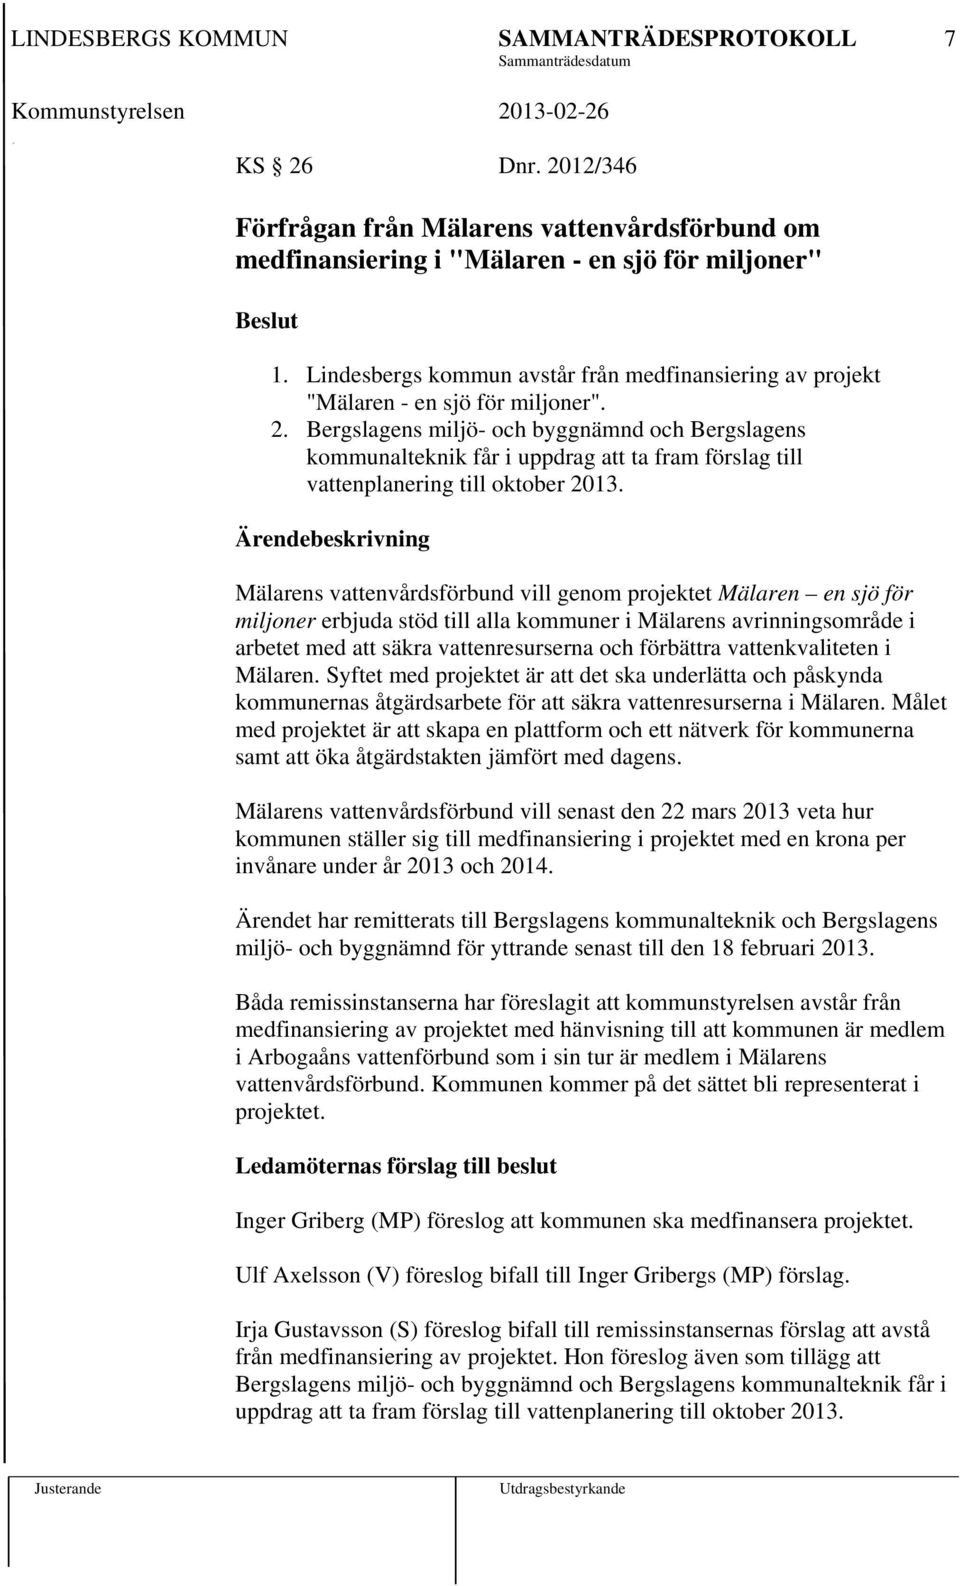 Bergslagens miljö- och byggnämnd och Bergslagens kommunalteknik får i uppdrag att ta fram förslag till vattenplanering till oktober 2013.